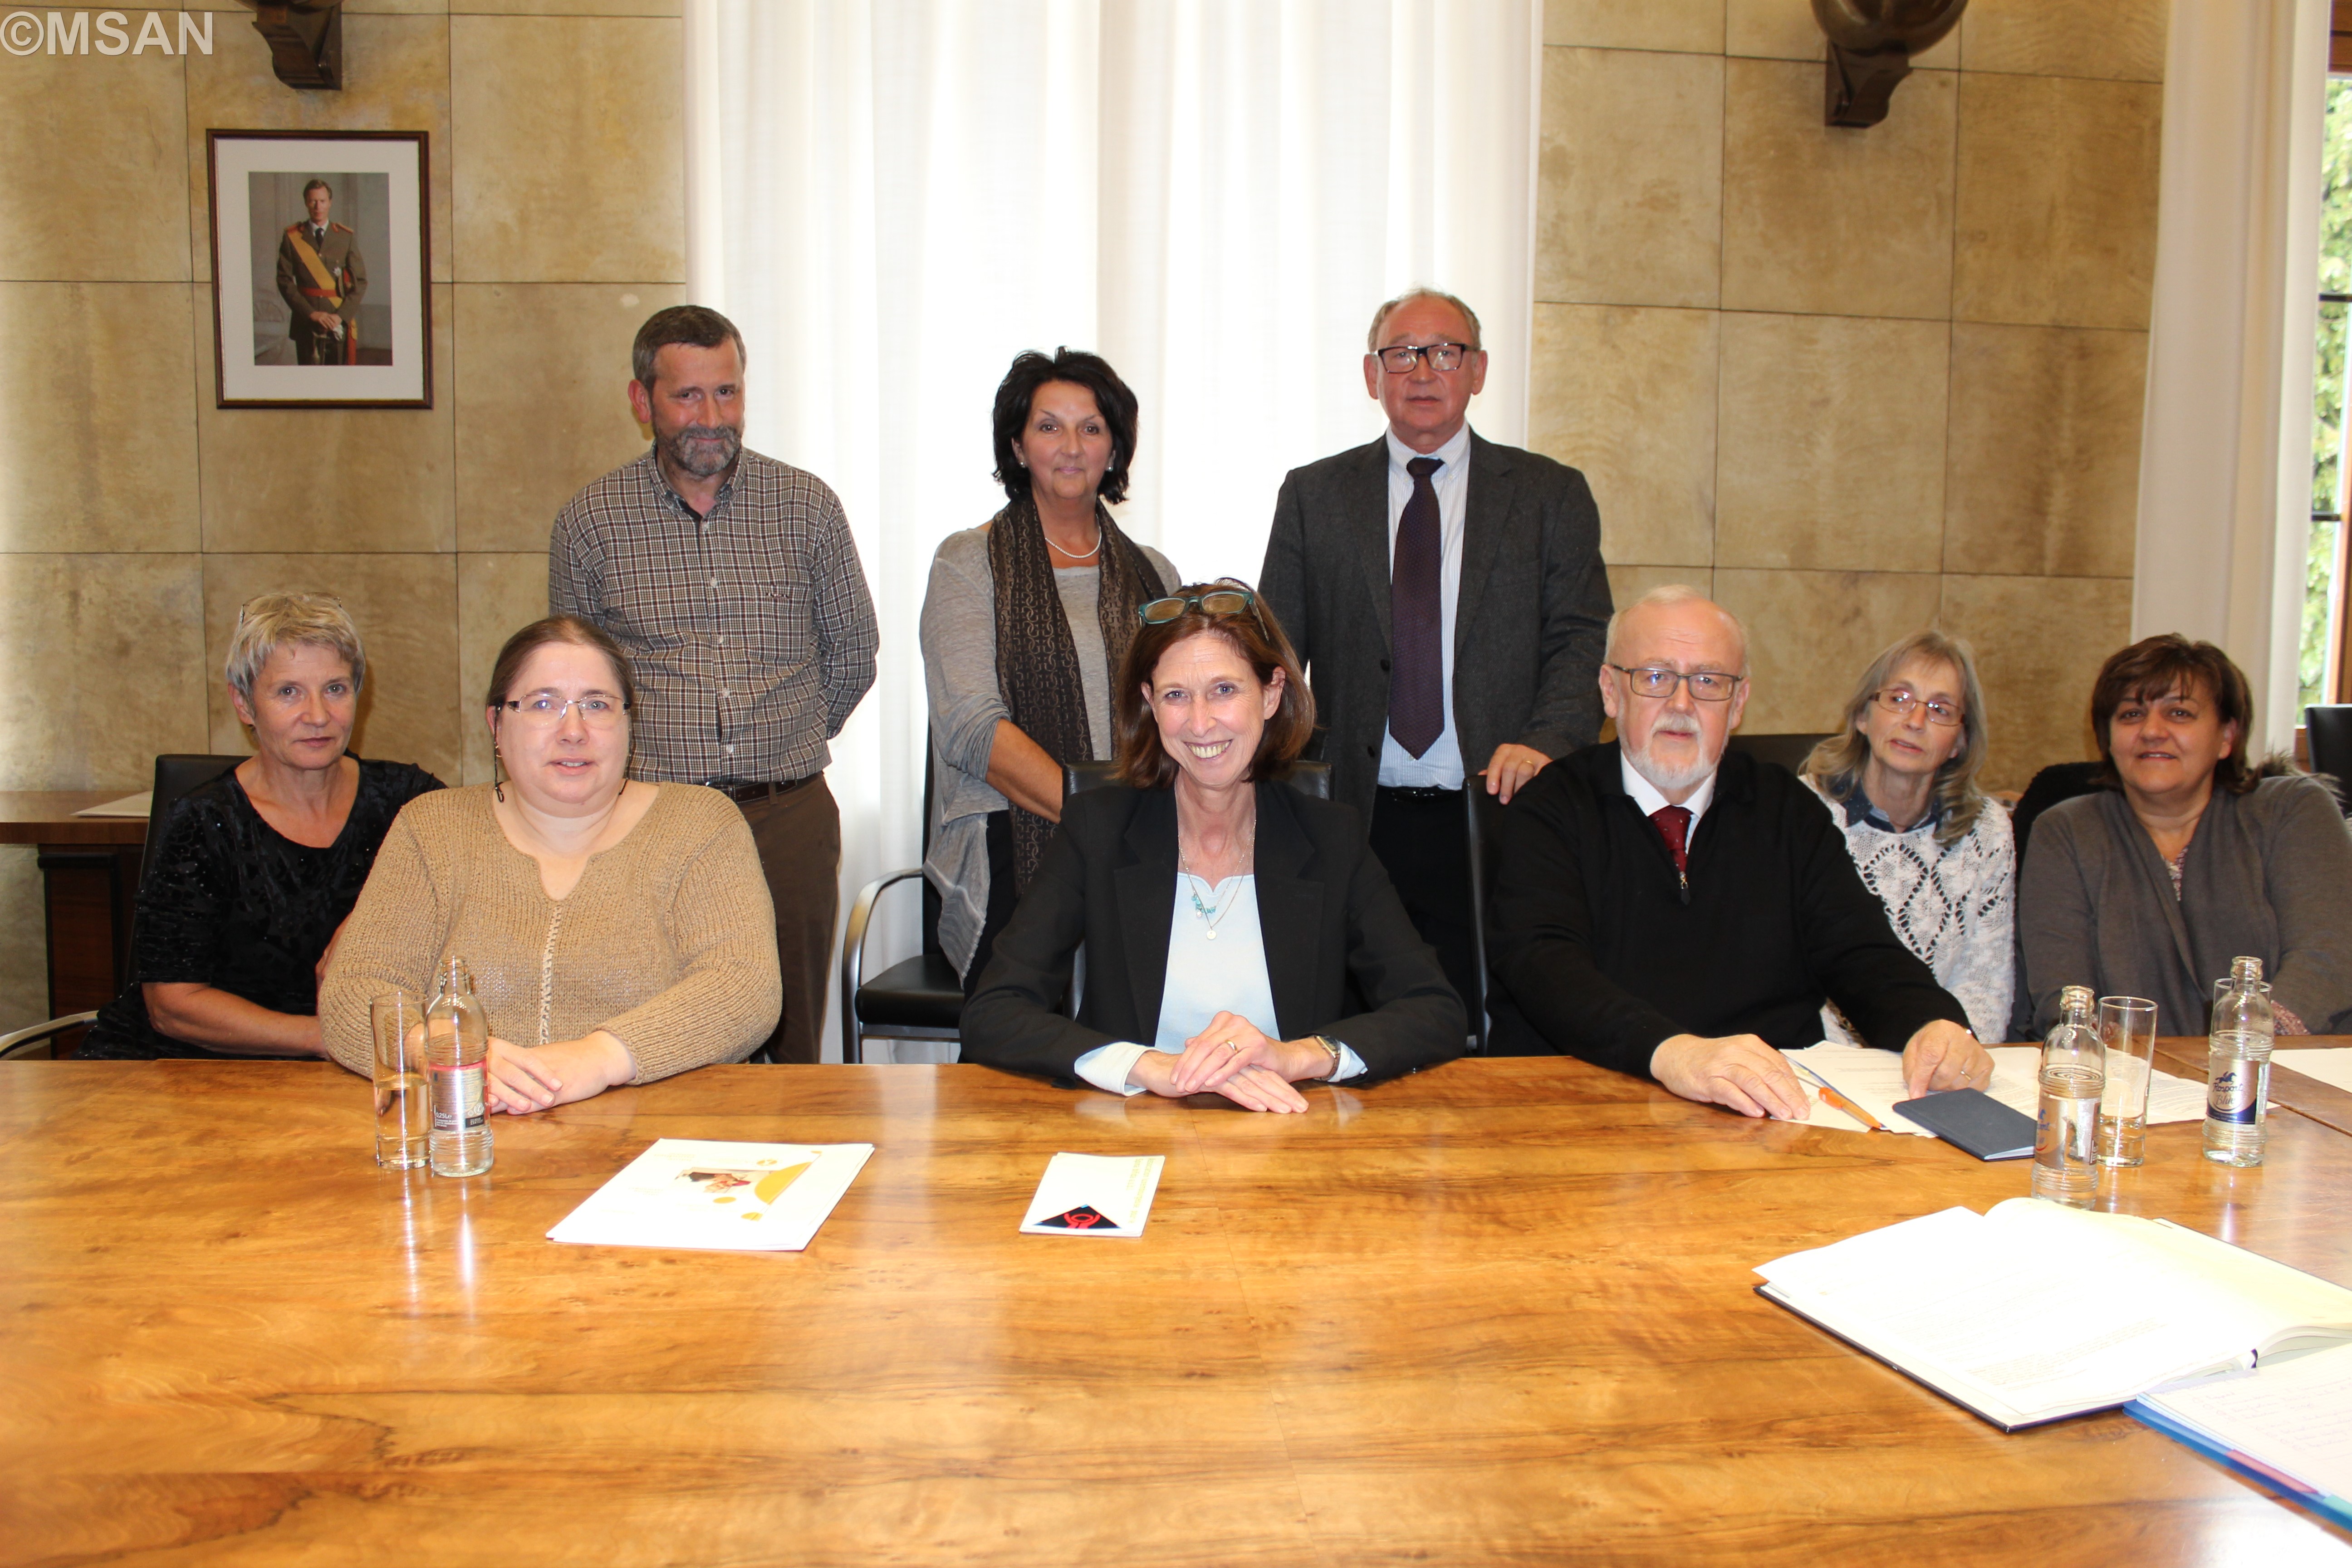  Lydia Mutsch rencontre les repr, Lydia Mutsch avec les représentants de l’association luxembourgeoise pour le Spina bifida